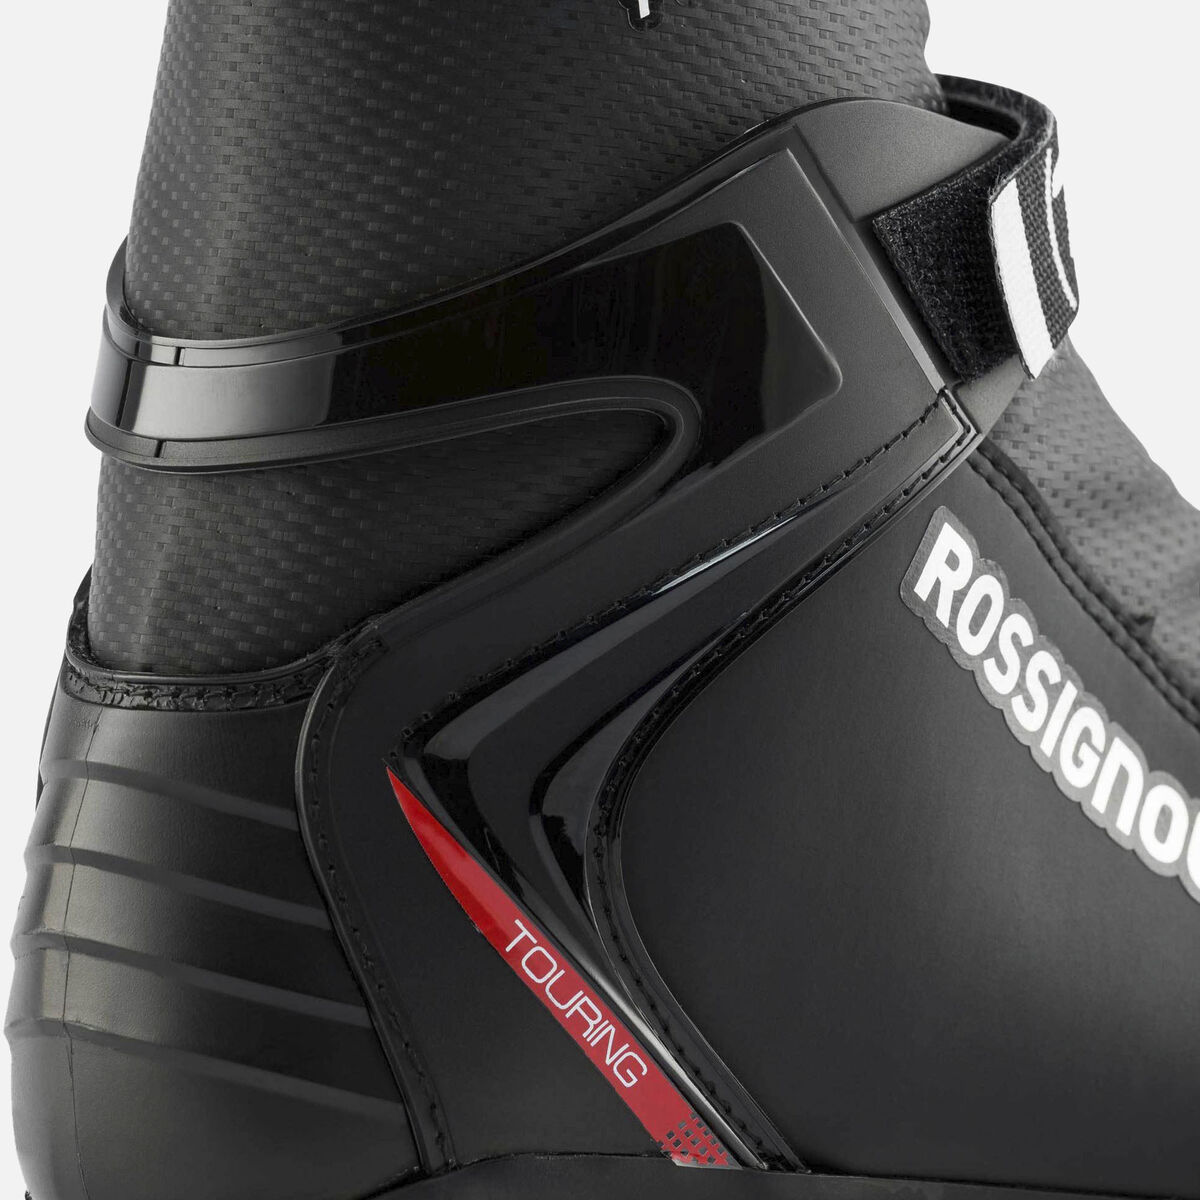 Rossignol Unisex Nordic TOURING Boots XC-3 multicolor